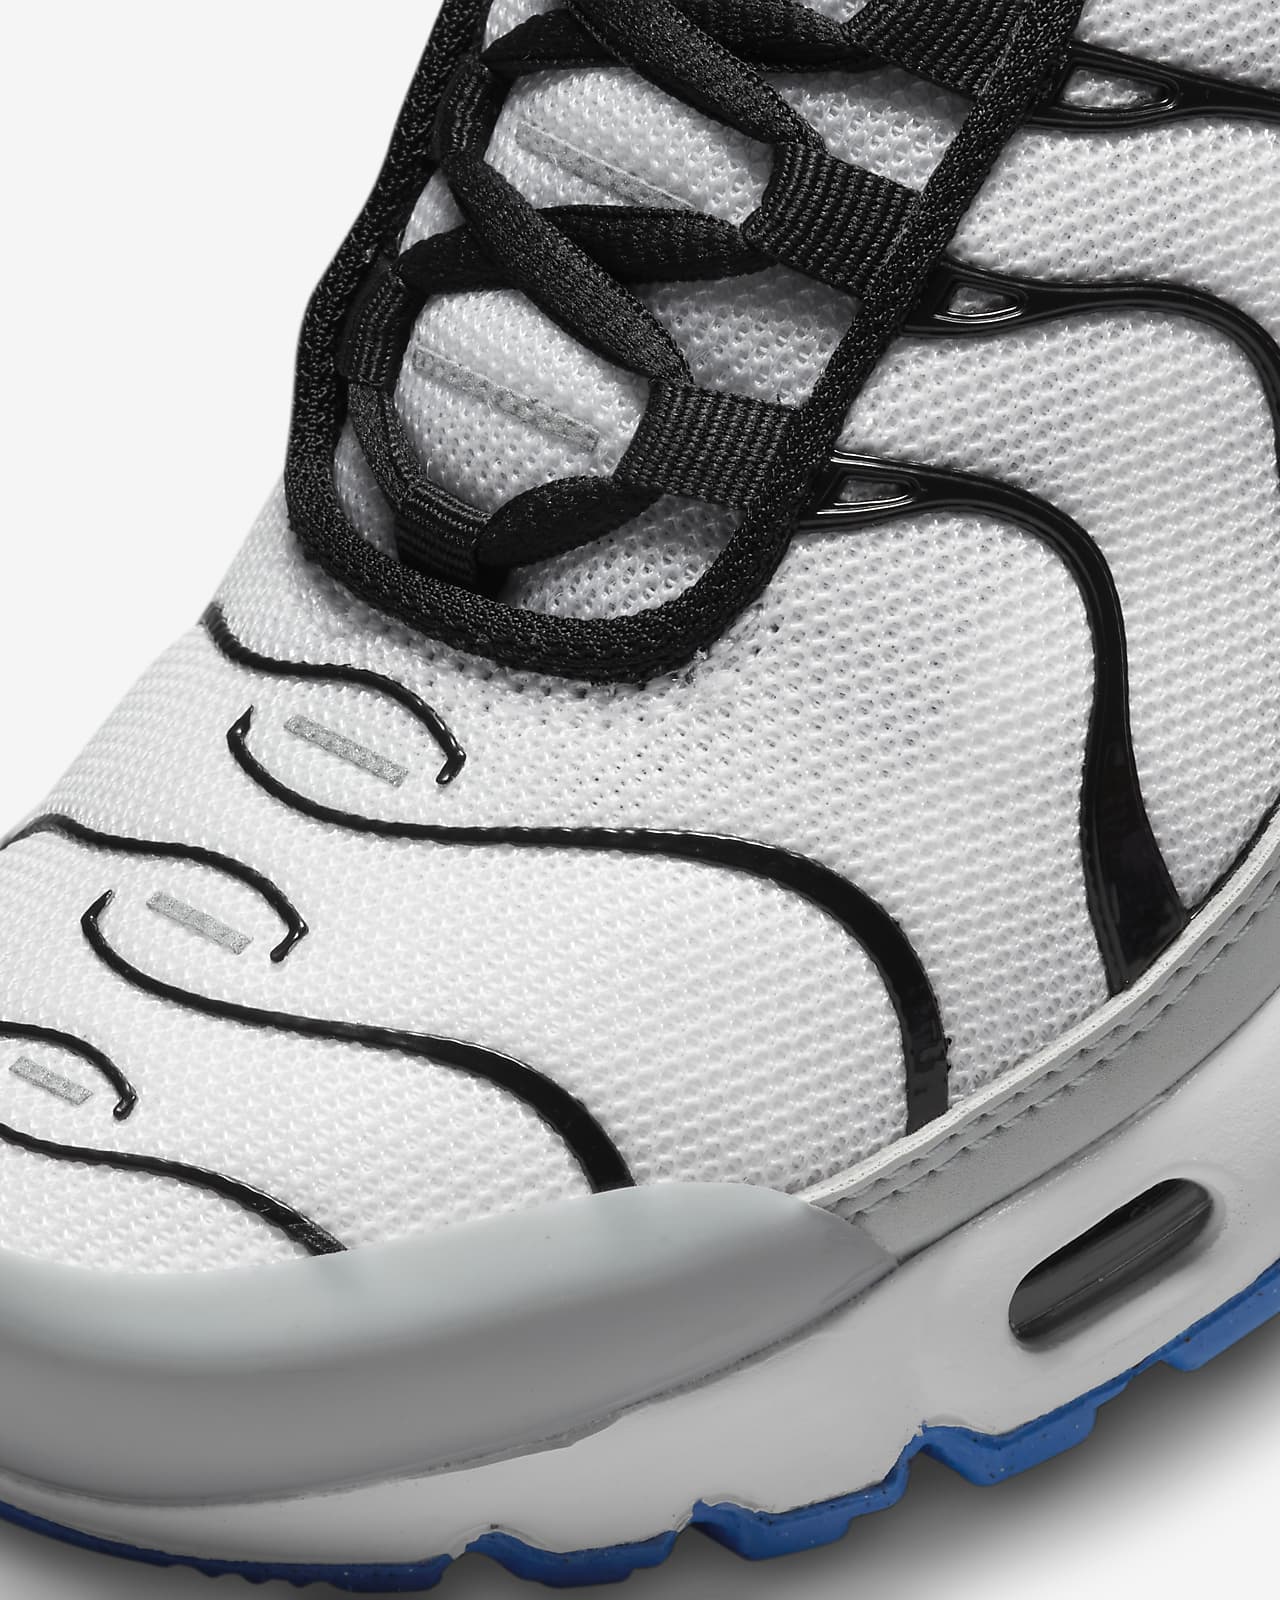 Lotsbestemming Airco Schandalig Nike Air Max Plus Big Kids' Shoe. Nike.com